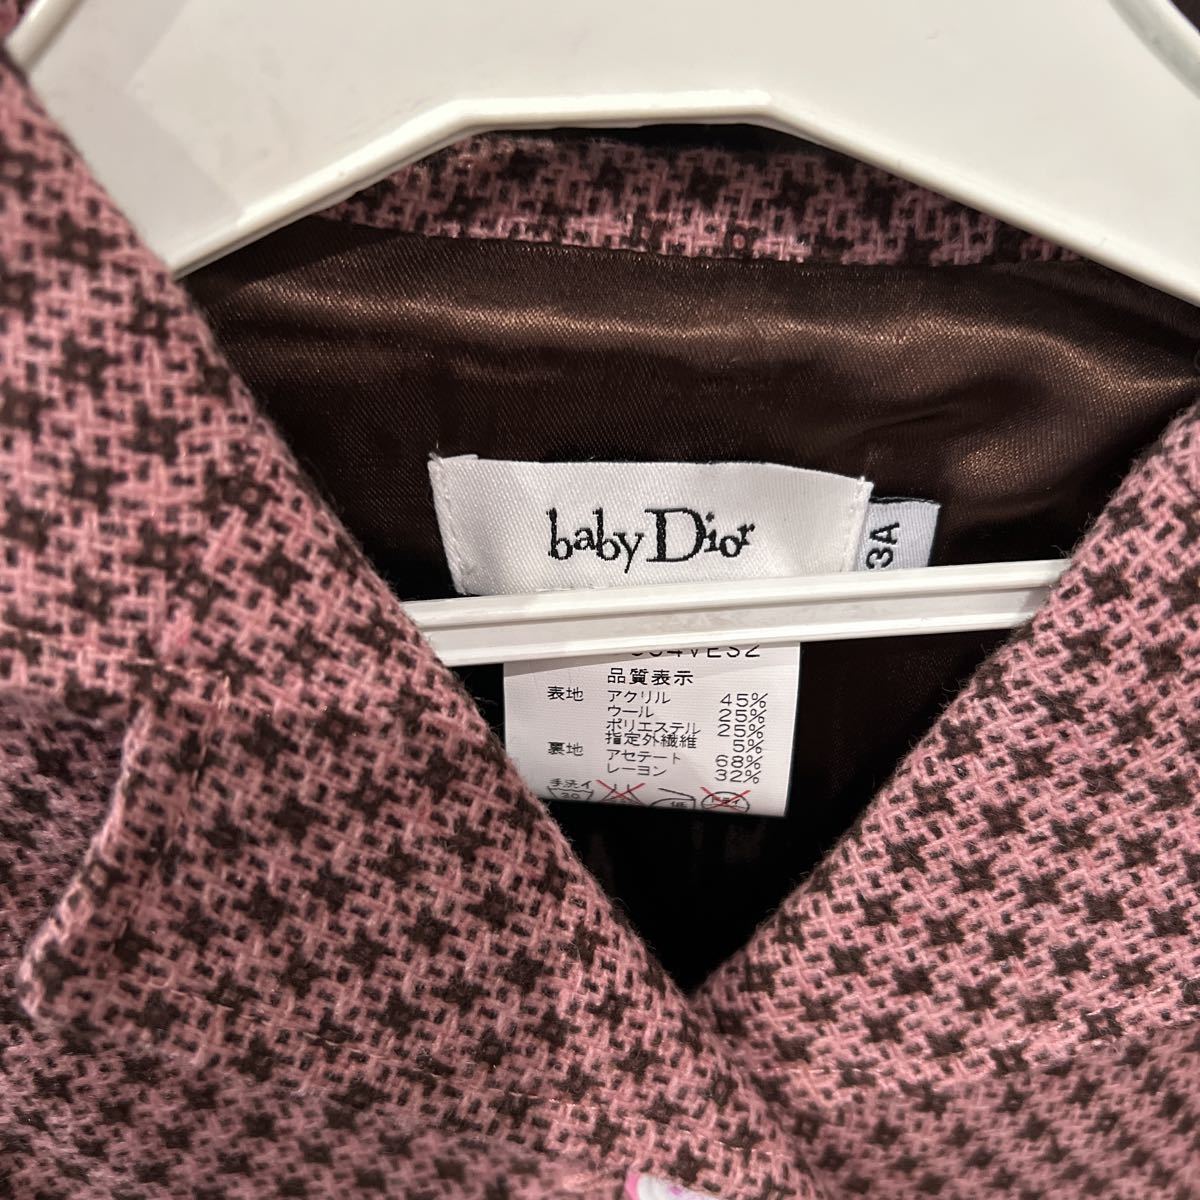  Baby Dior твид жакет 3A не использовался товар внутренний стандартный товар!! конечная цена 